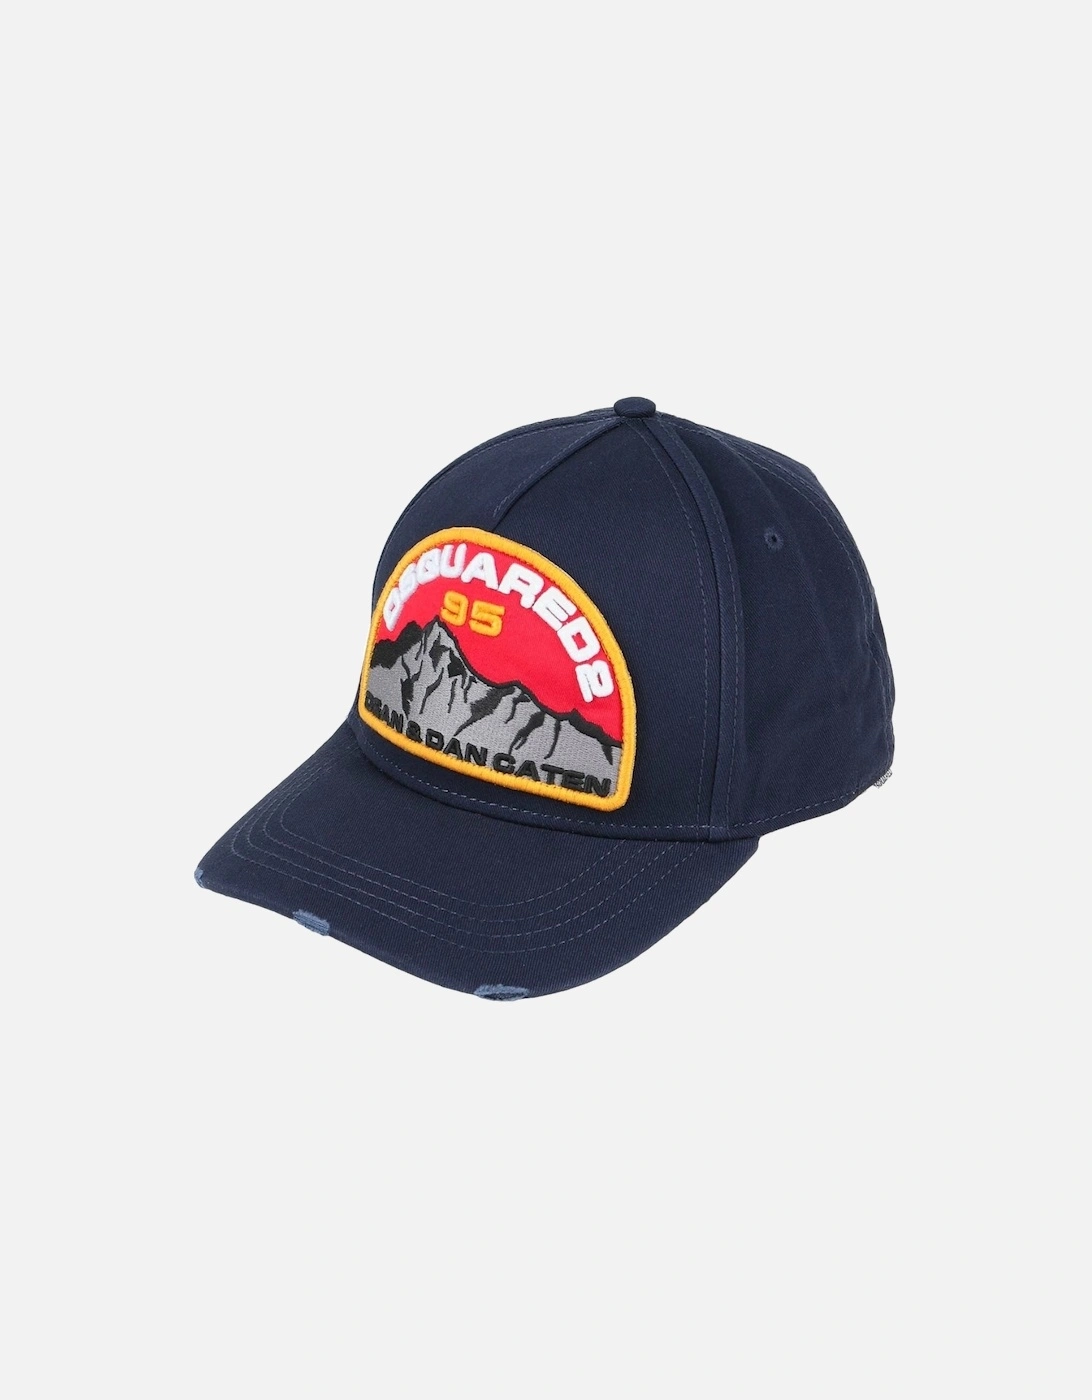 95 Rocky Mountain Navy Blue Baseball Cap, 4 of 3